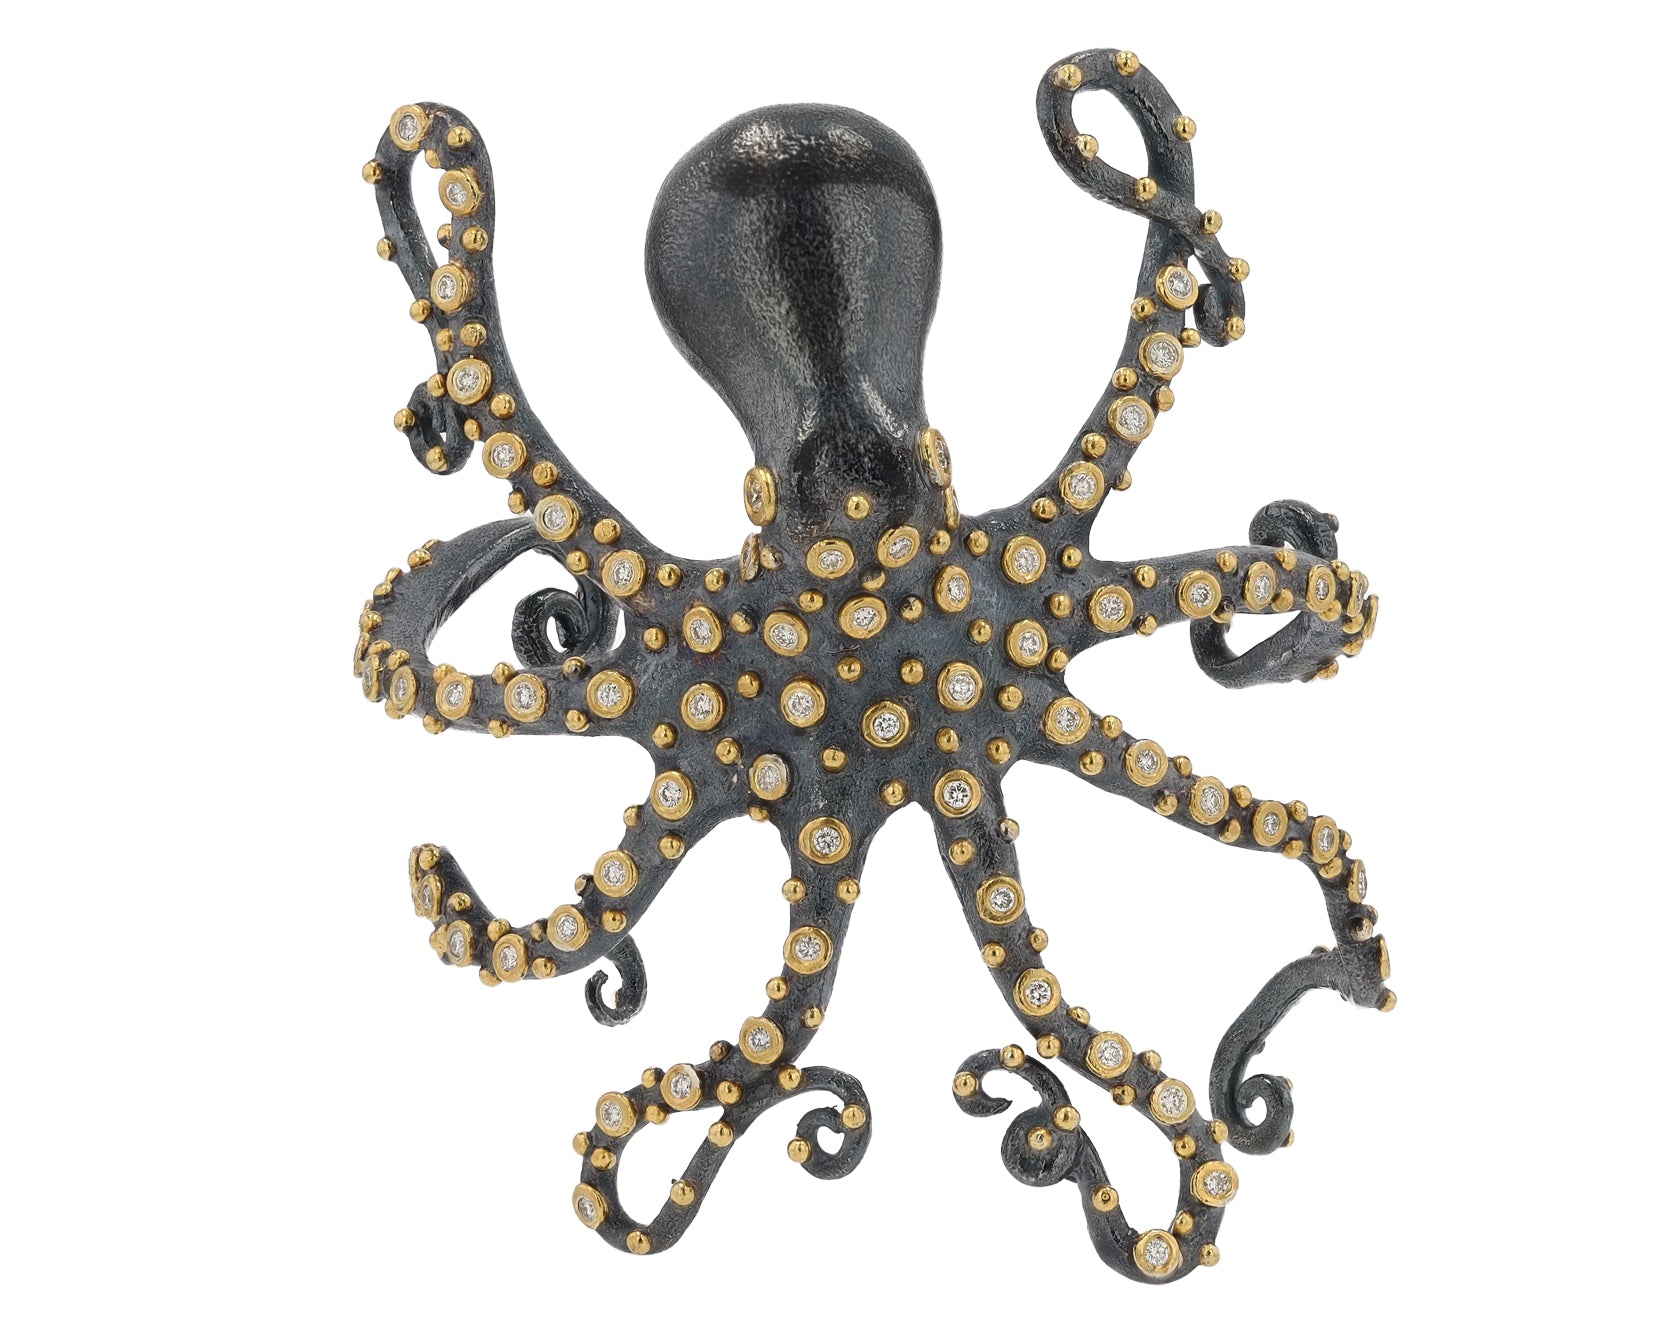 Octopus Cuff Bracelet